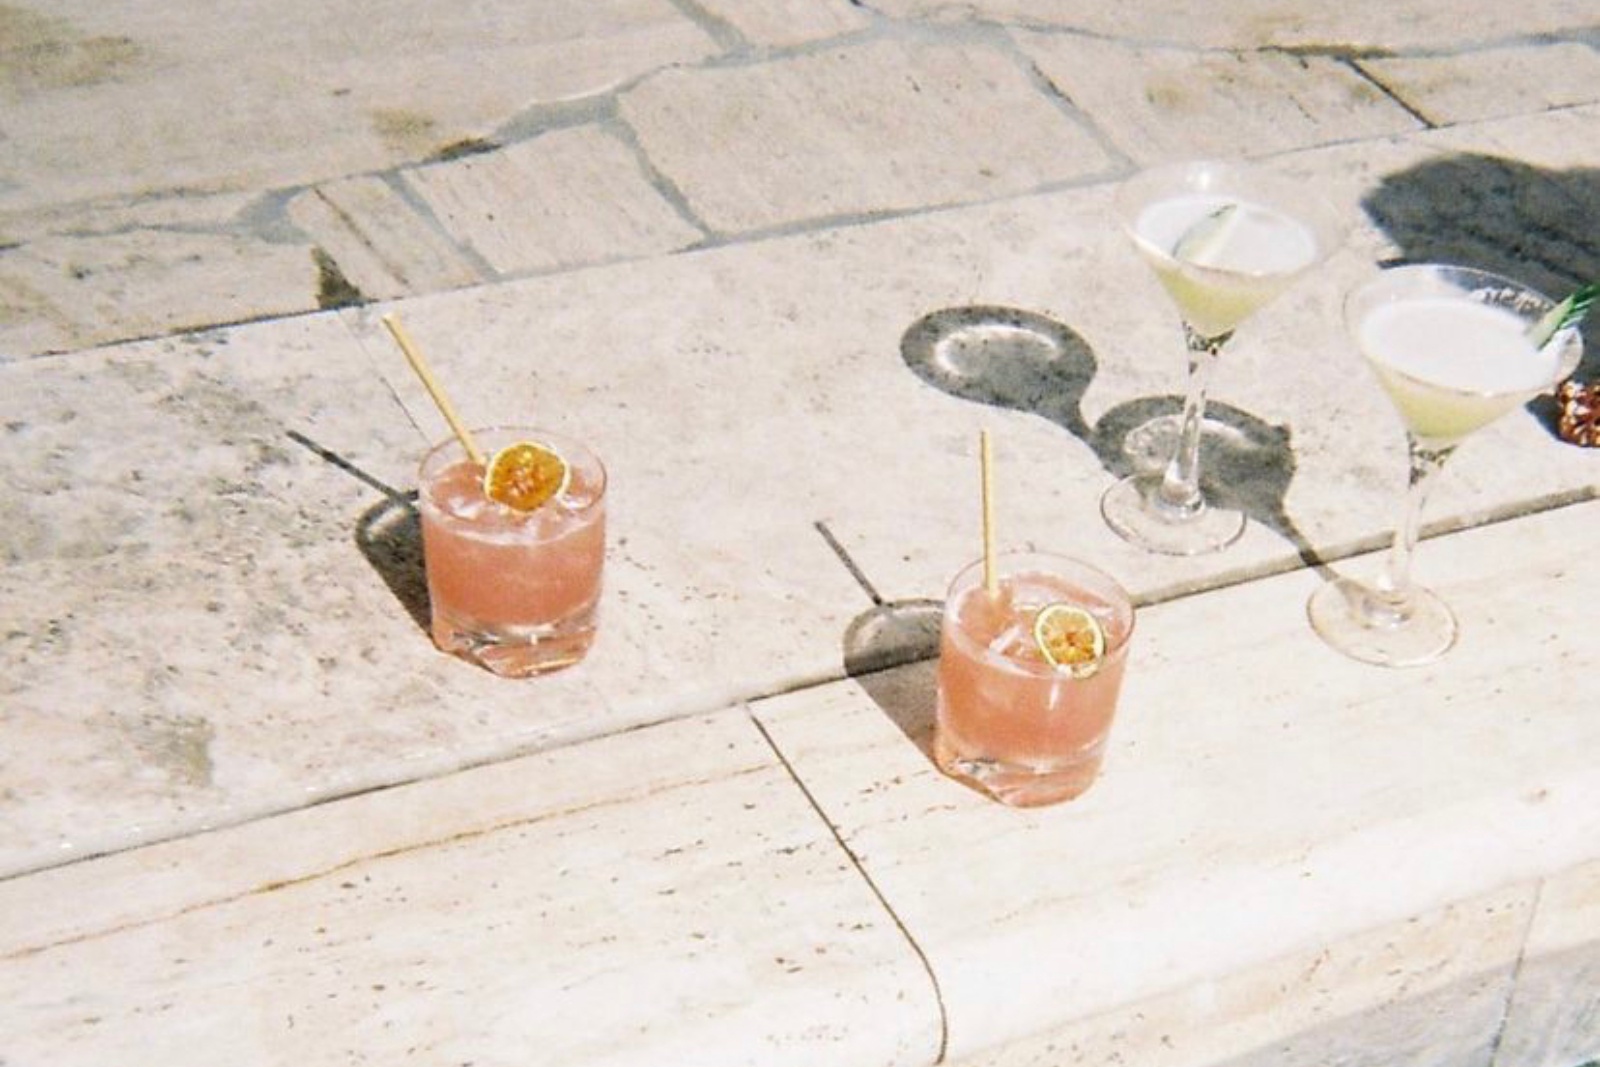 Cocktail culture